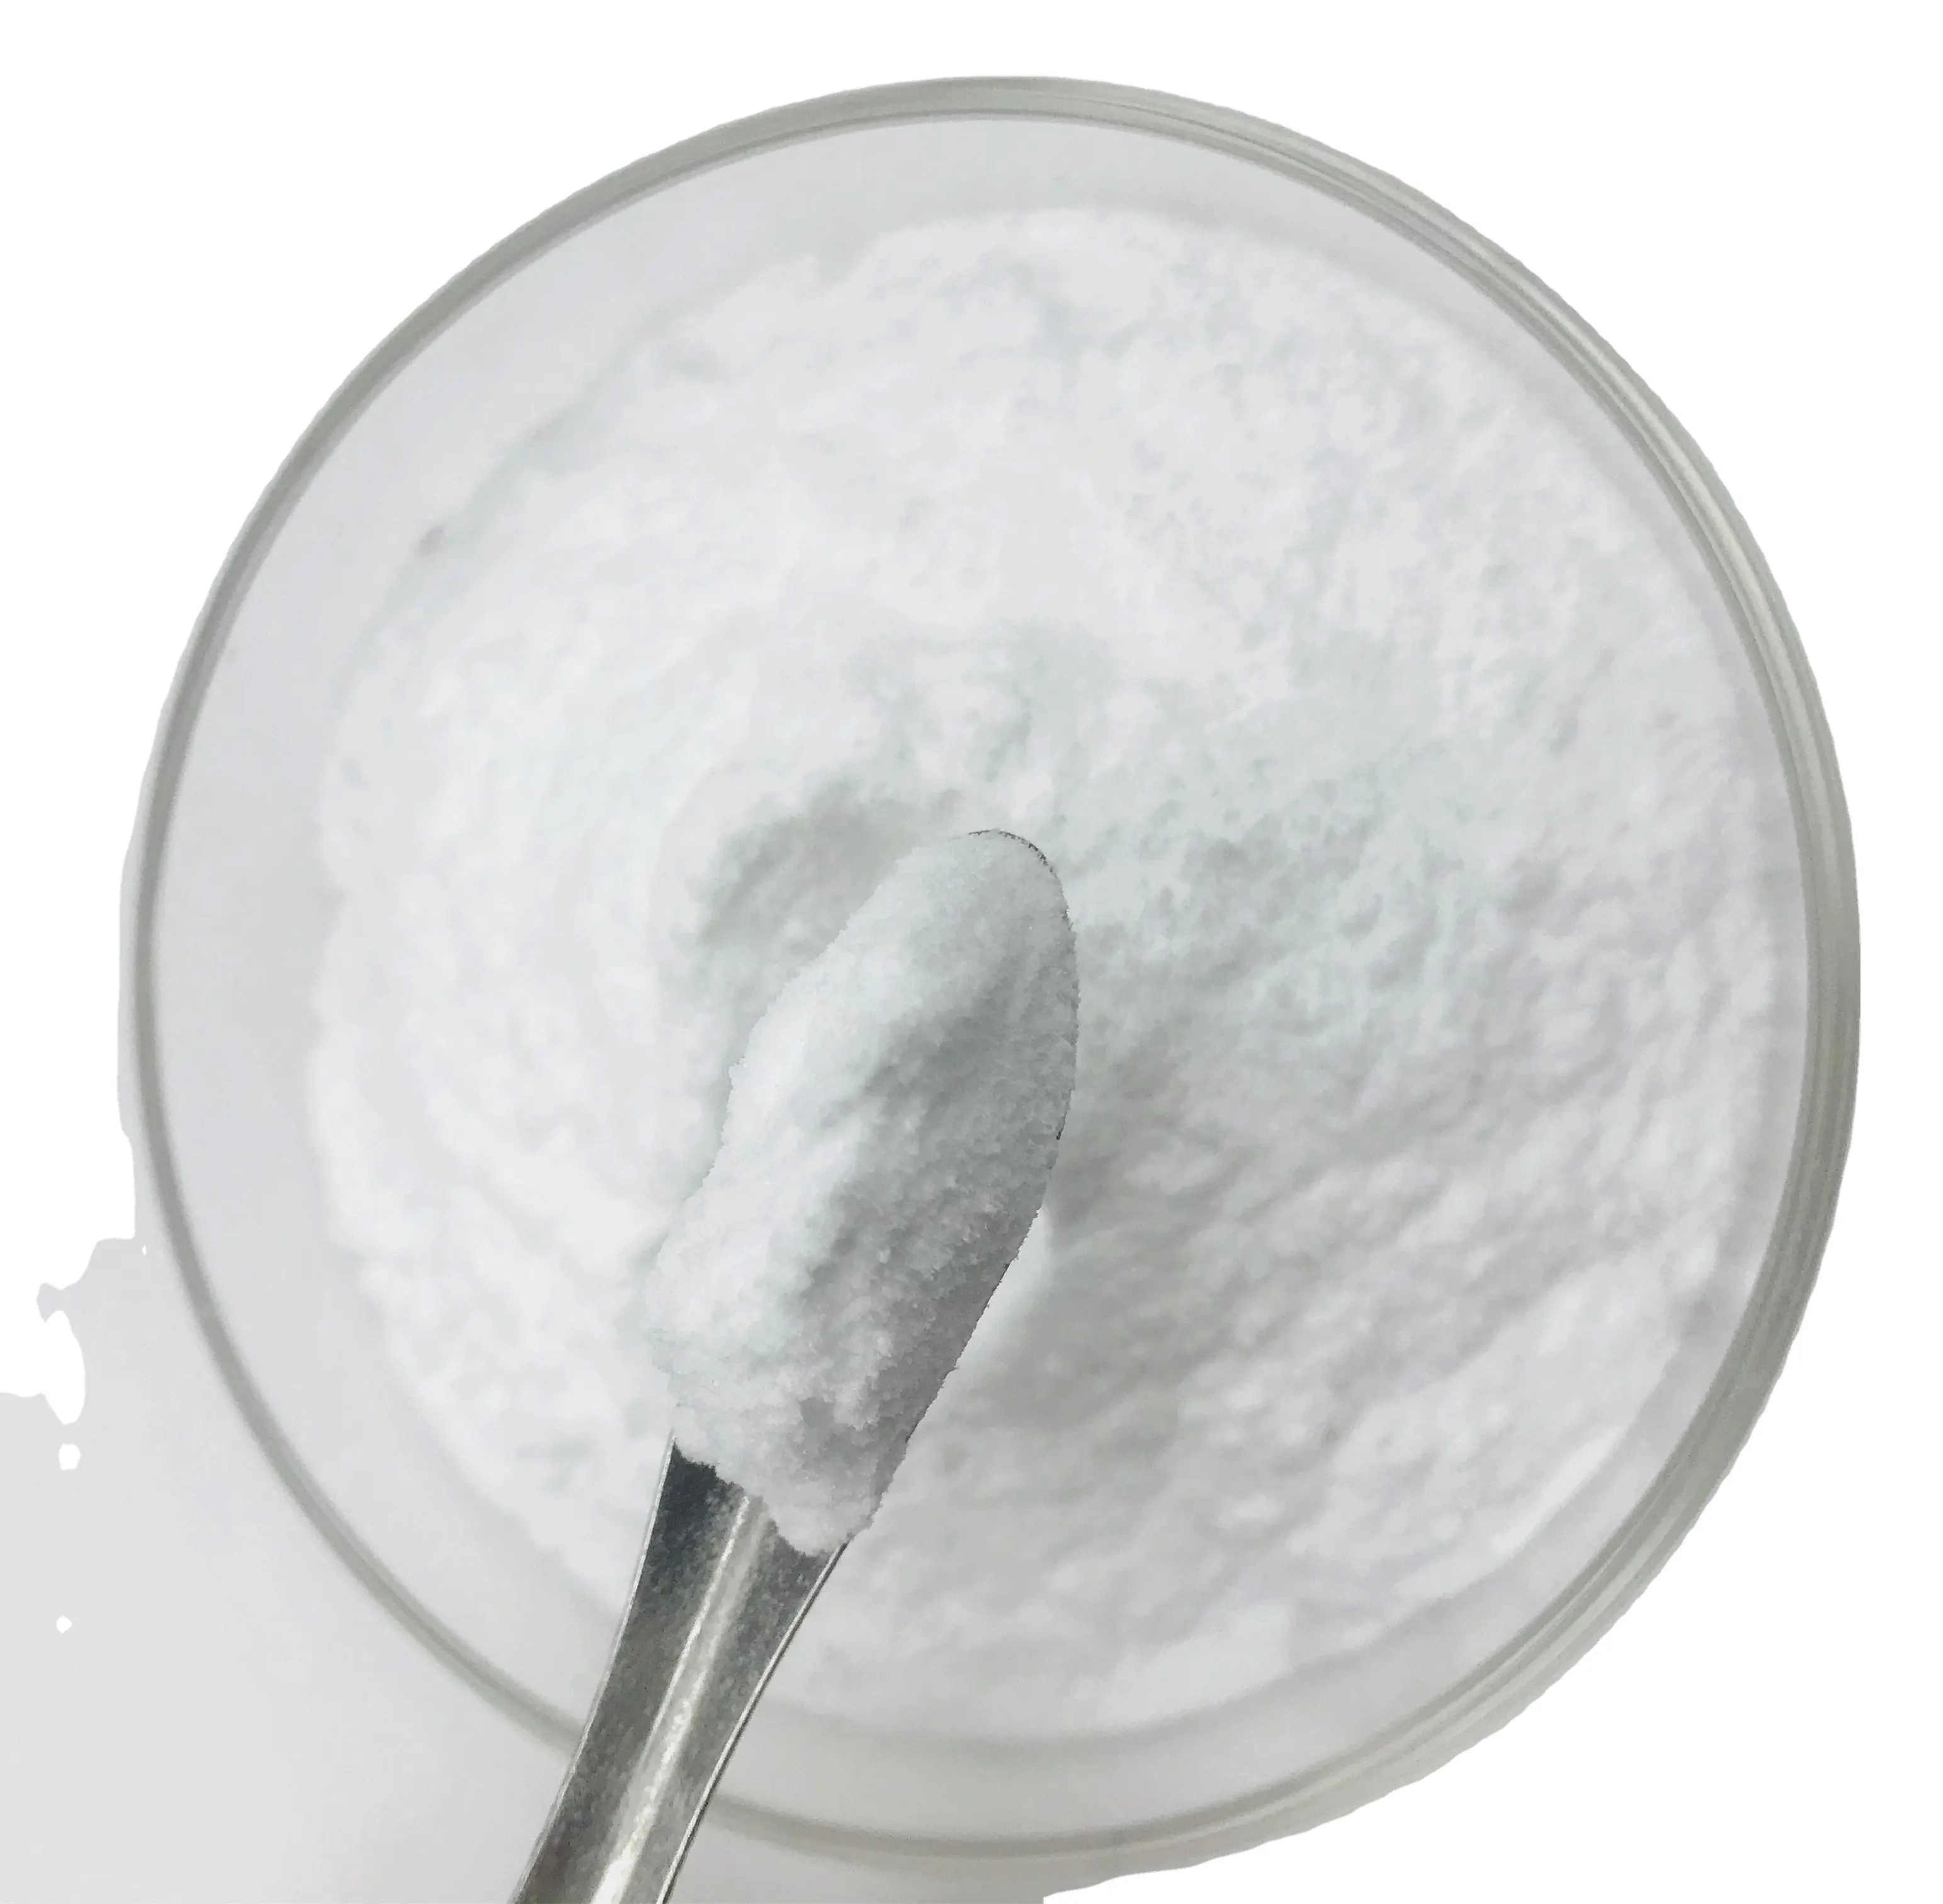 バルクミルクセーキ飲料メーカー損失価格純粋な甘味料砂糖1kgスクラロース粉末